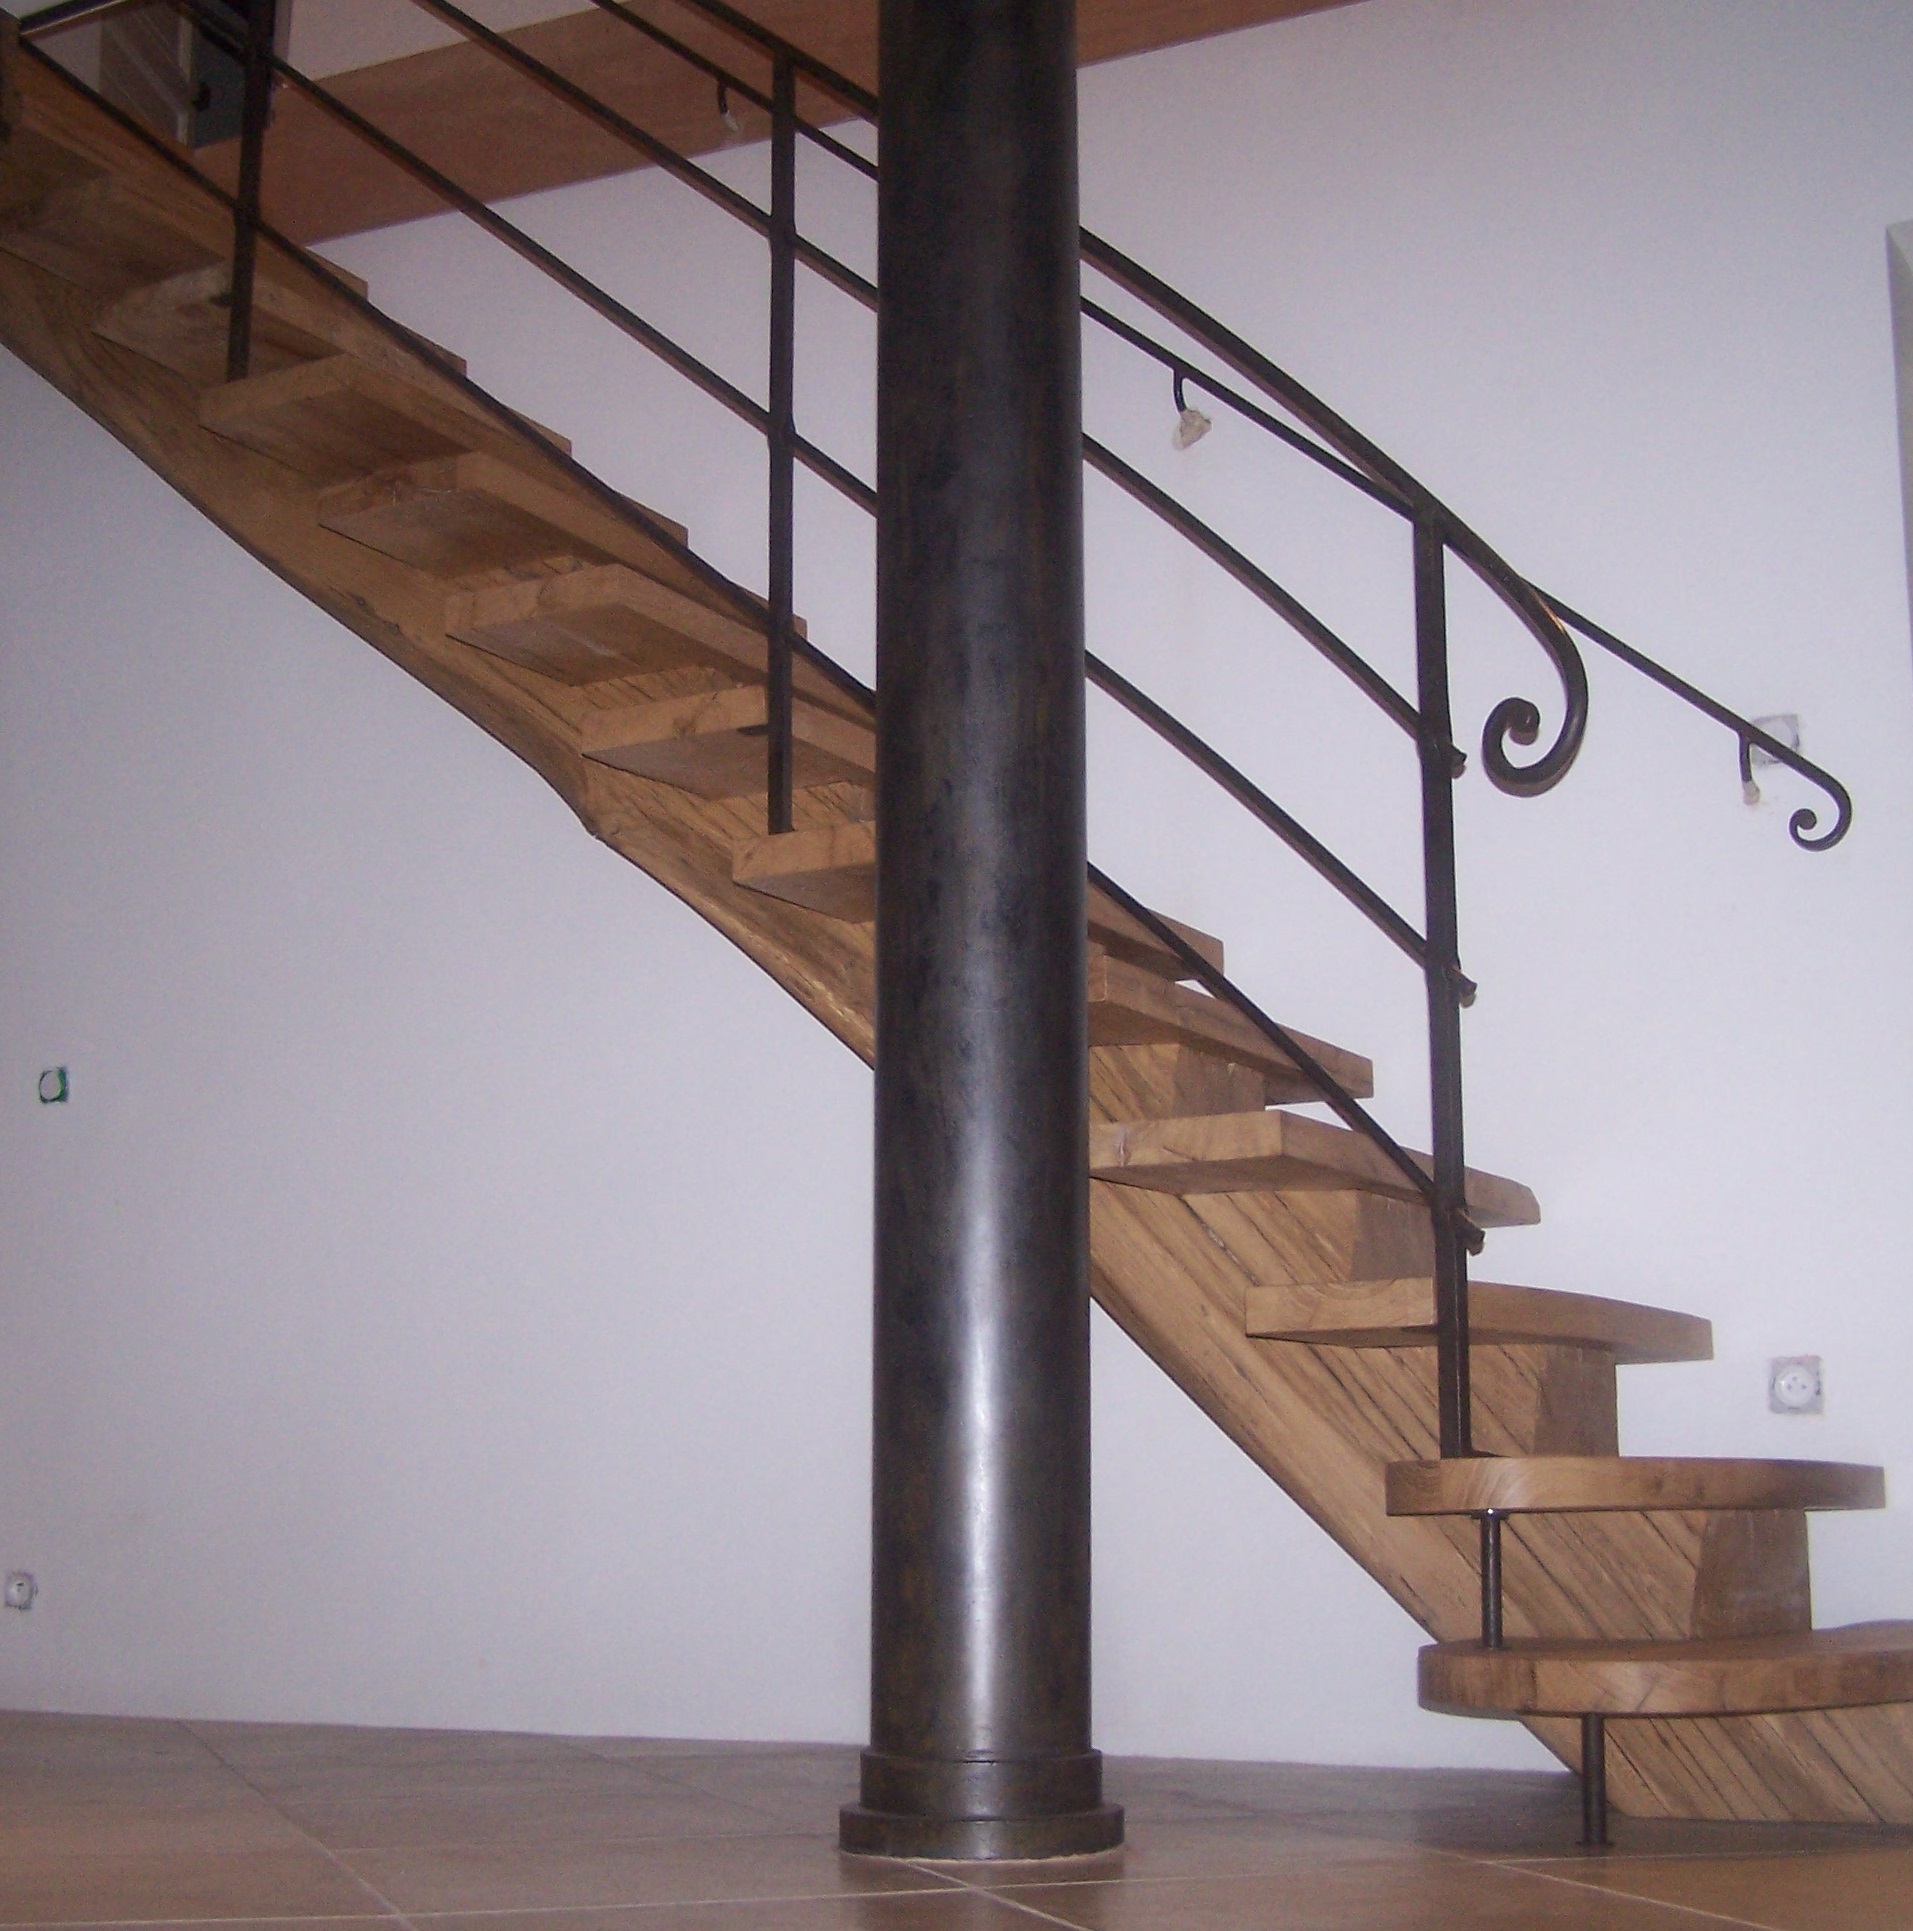 Création d'un escalier débillardé, main courante en bois, balustre coudée  fer forgé – Le Fer Forgé